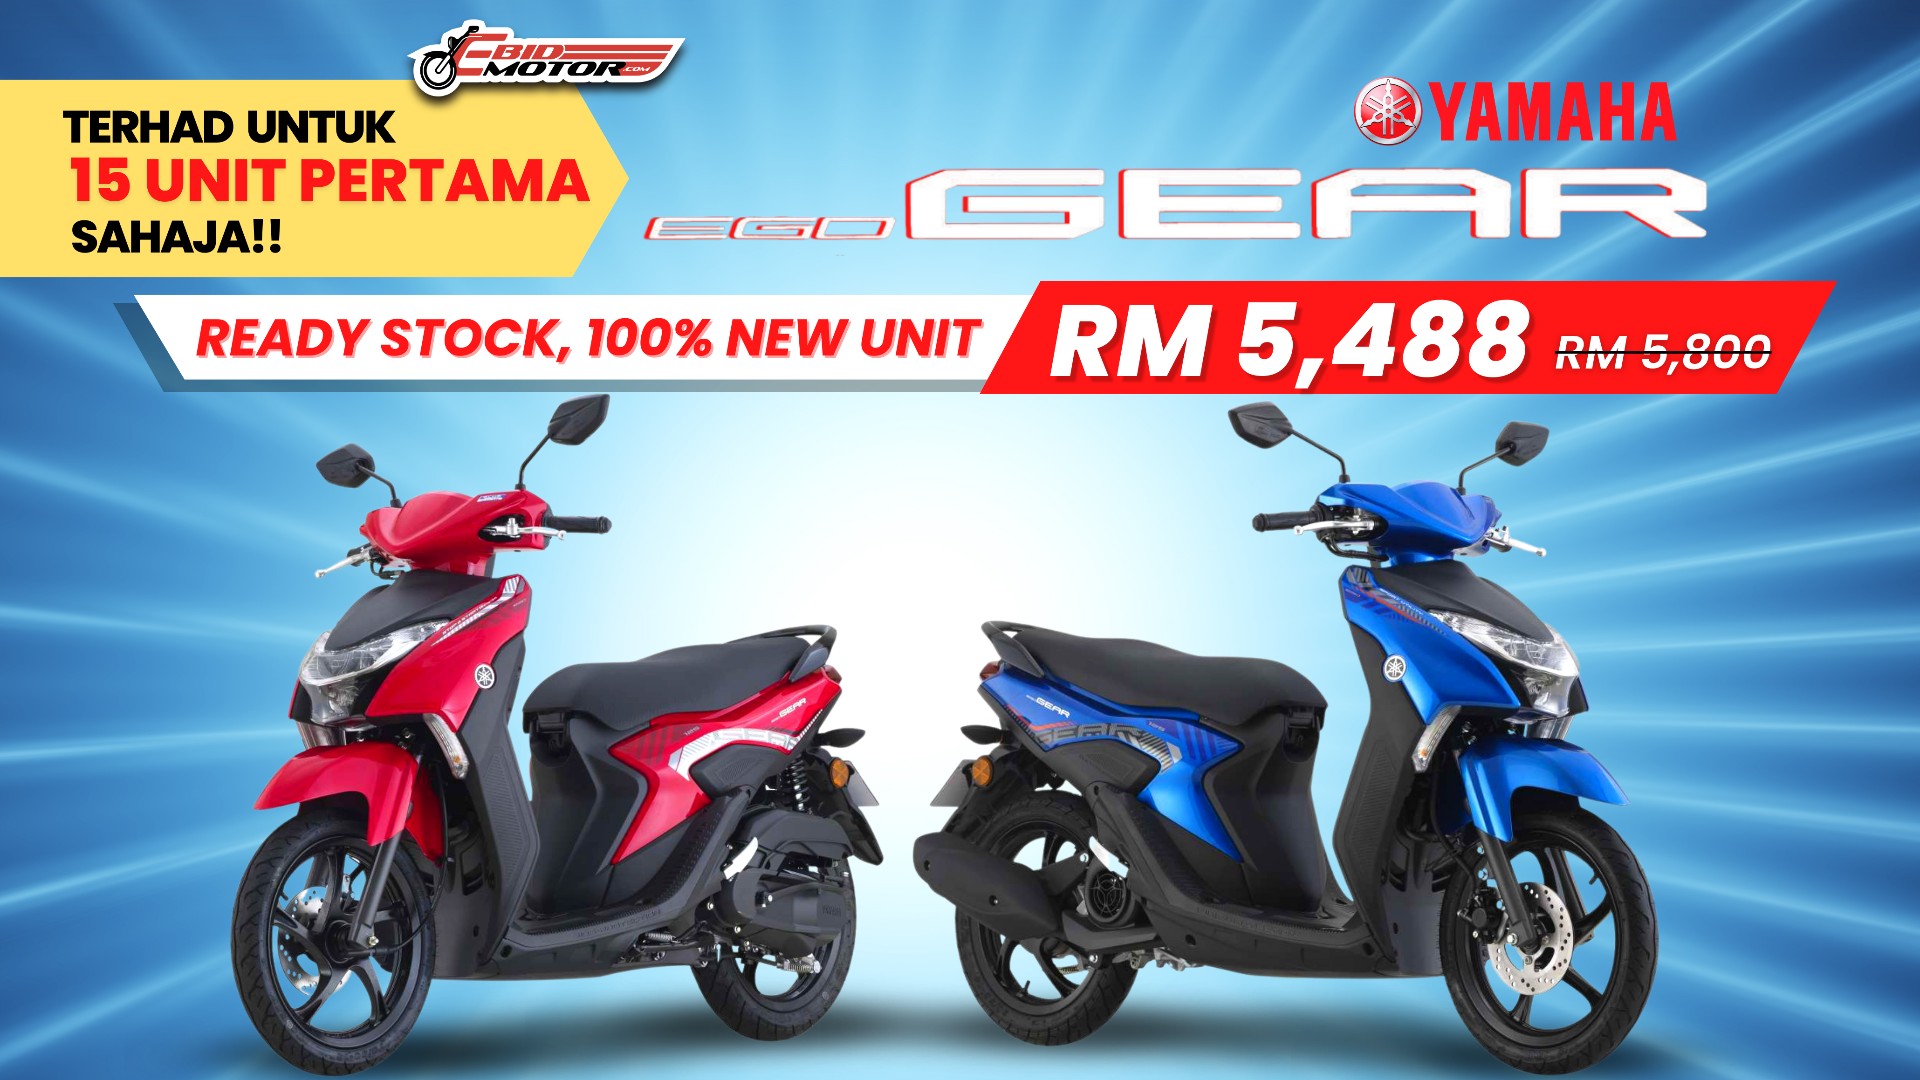 Harga Motor Baru Cekik Darah? Kami Ada Yamaha Ego Gear, 100% Baru, Ready Stock, Cuma RM5,488 Je!